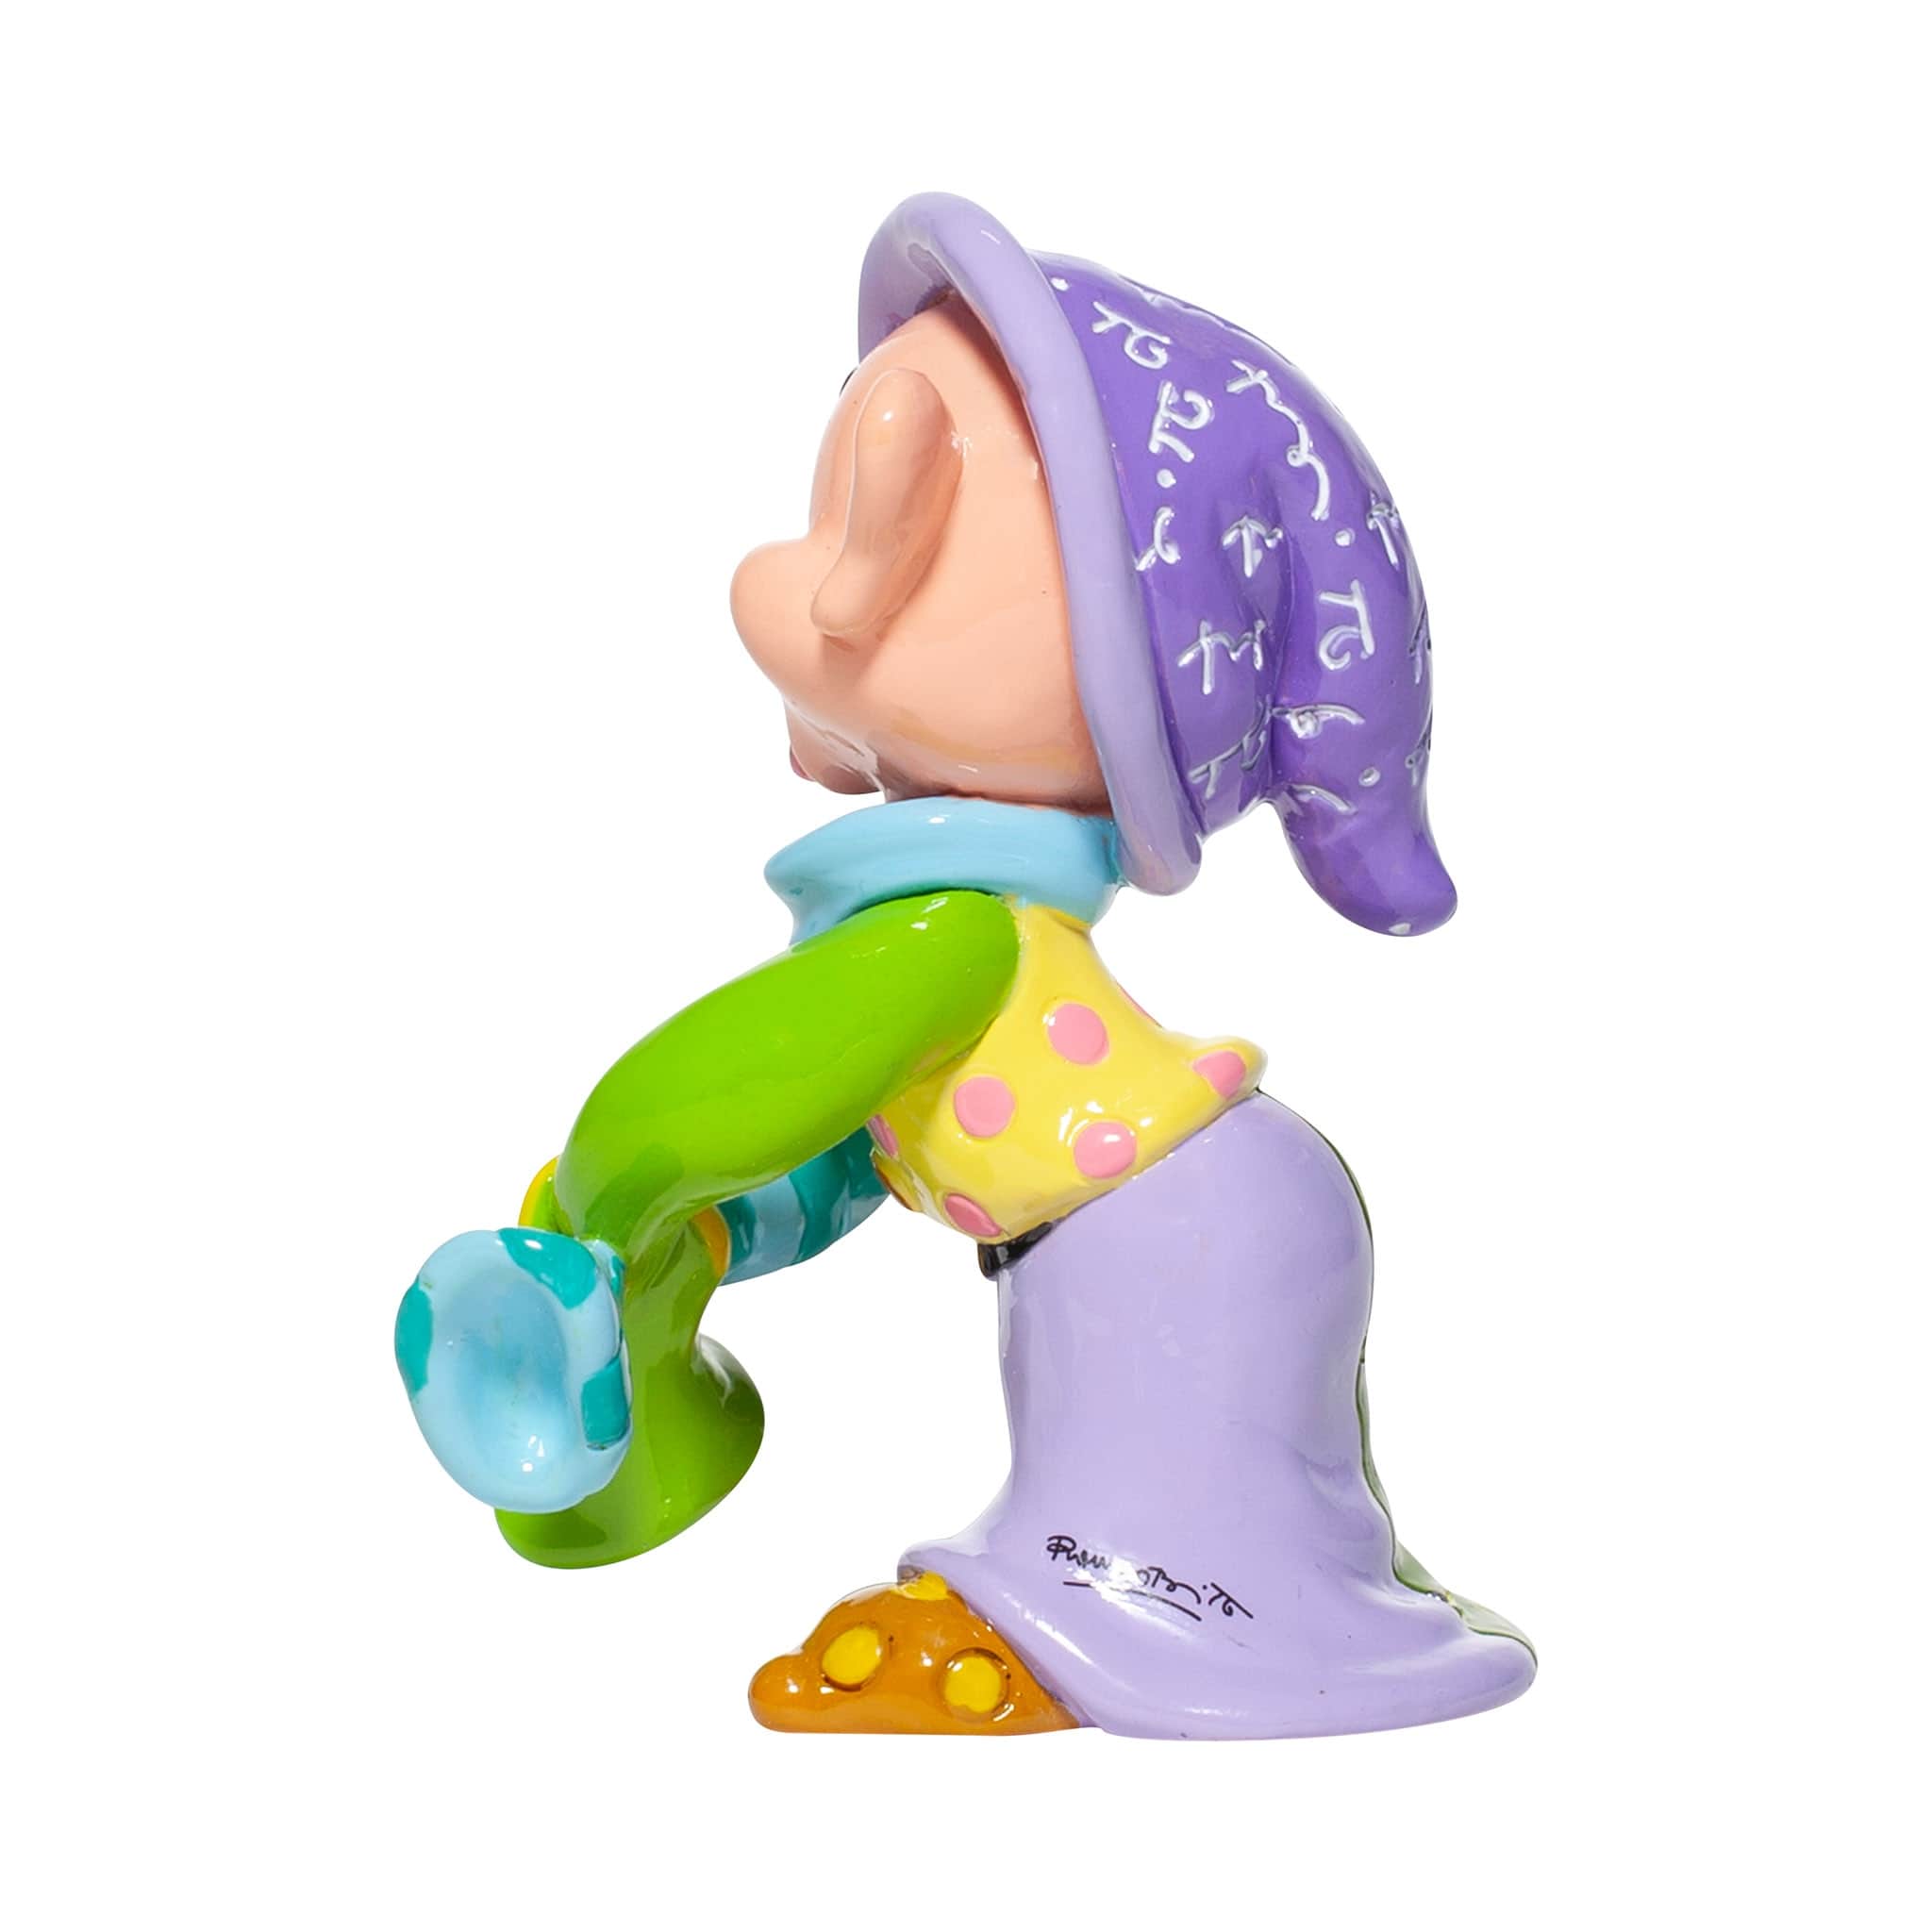 Sammelfigur Disney 7 Zwerge Dopey Mini Figur